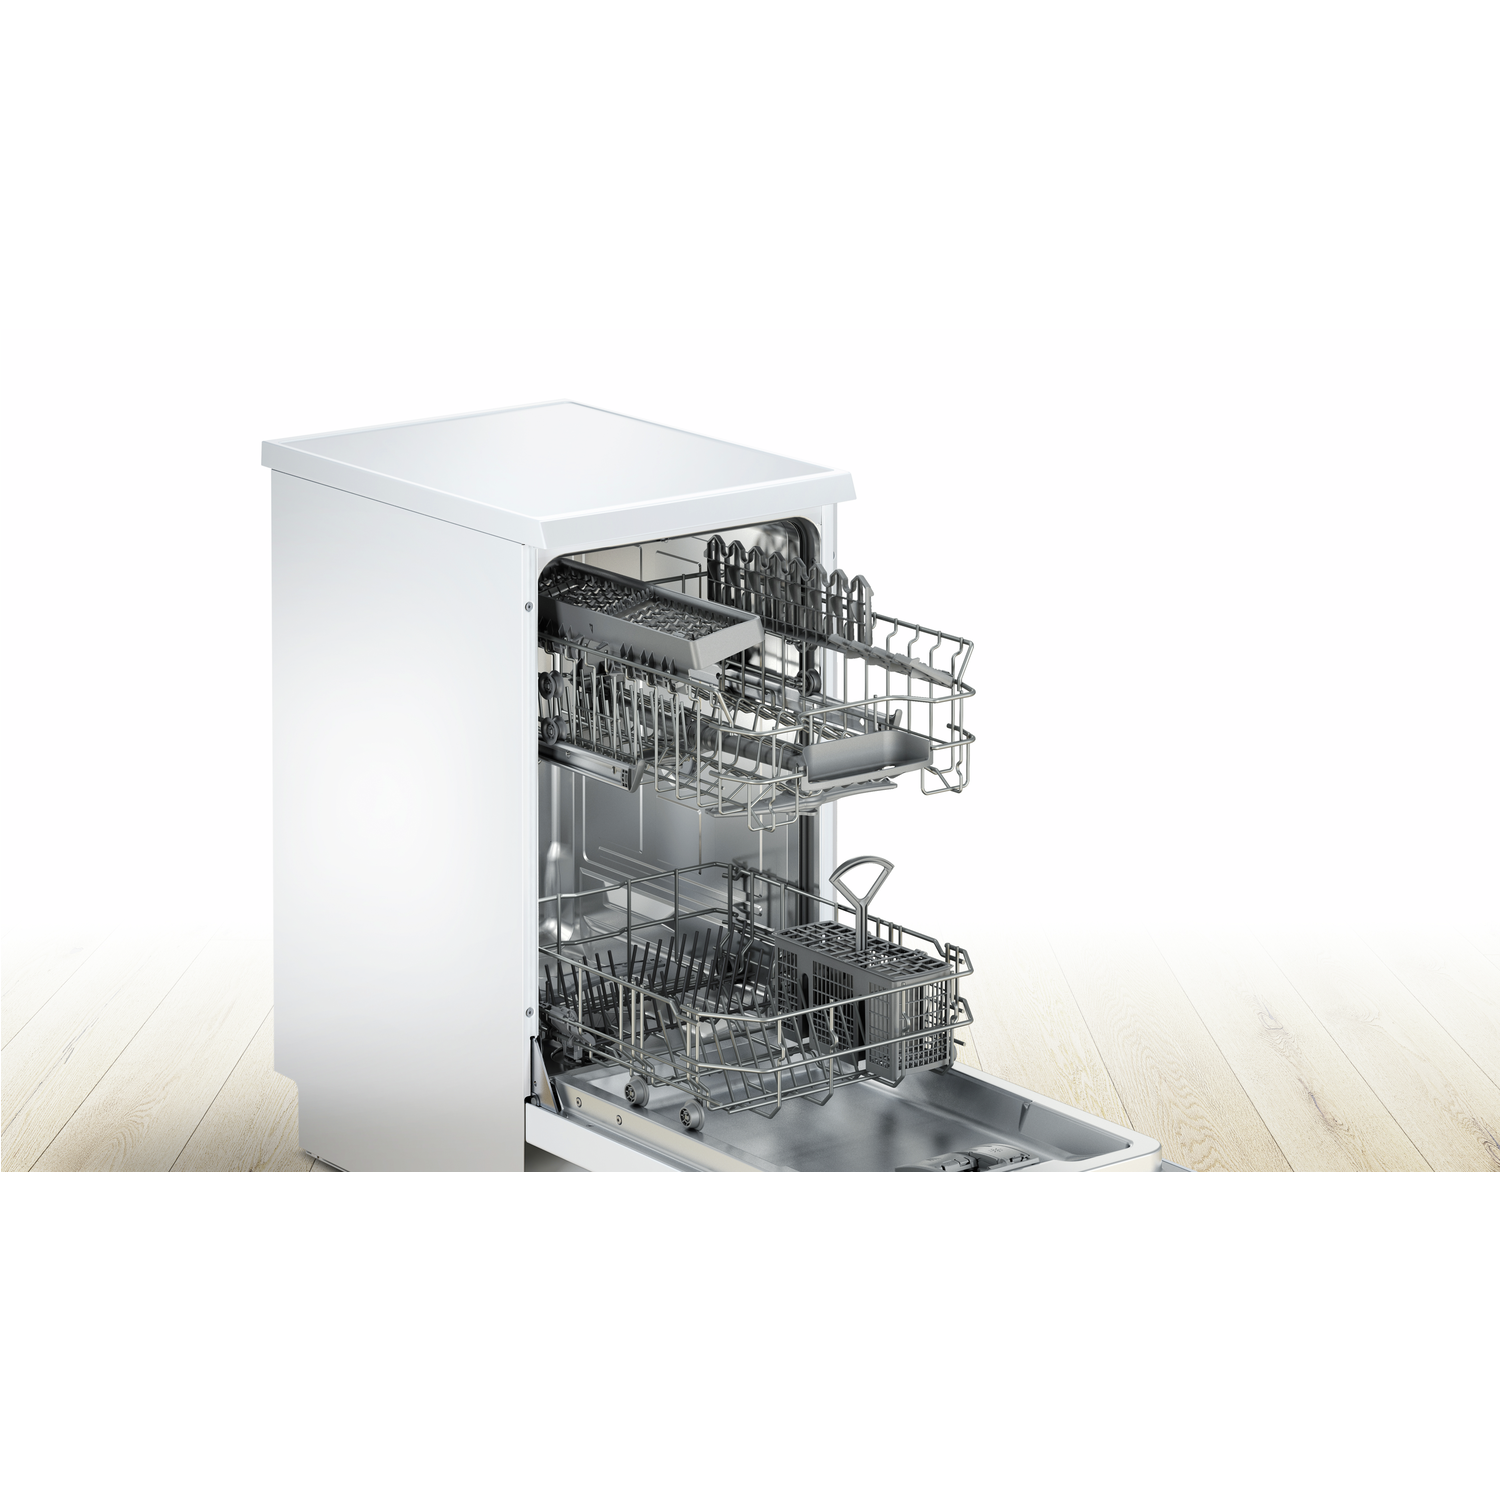 bosch serie 2 slimline dishwasher